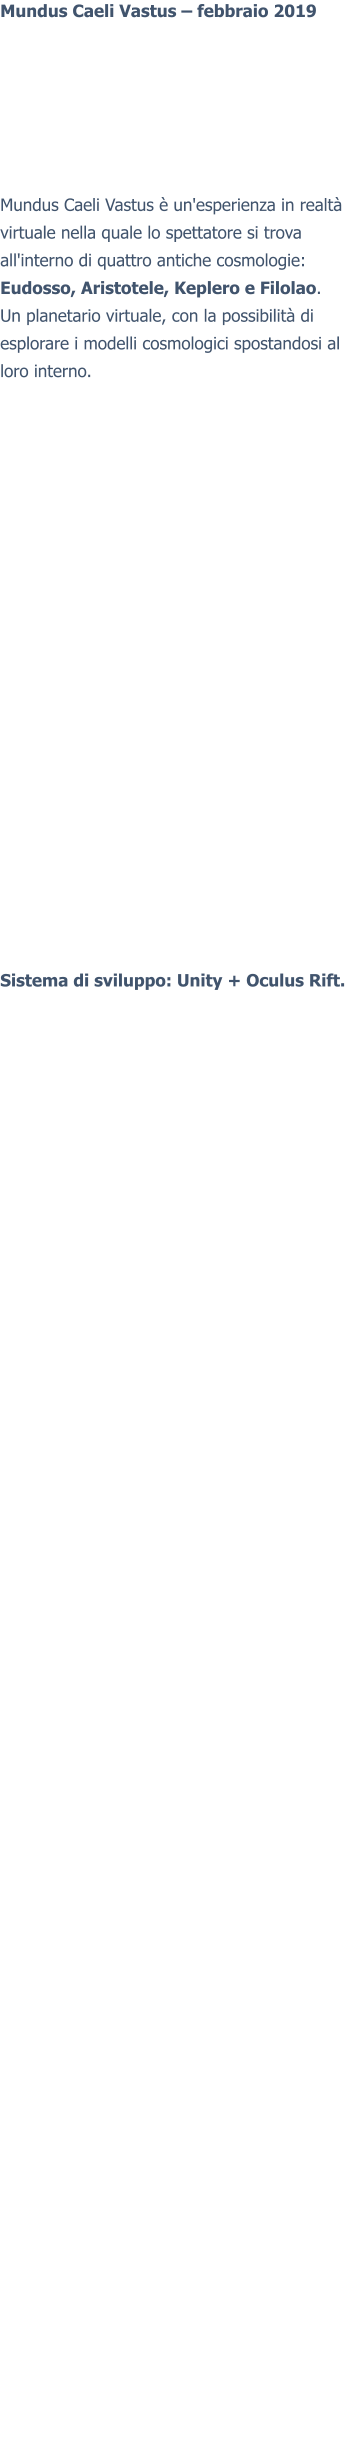 Mundus Caeli Vastus – febbraio 2019 Mundus Caeli Vastus è un'esperienza in realtà virtuale nella quale lo spettatore si trova all'interno di quattro antiche cosmologie: Eudosso, Aristotele, Keplero e Filolao. Un planetario virtuale, con la possibilità di esplorare i modelli cosmologici spostandosi al loro interno.  Sistema di sviluppo: Unity + Oculus Rift.